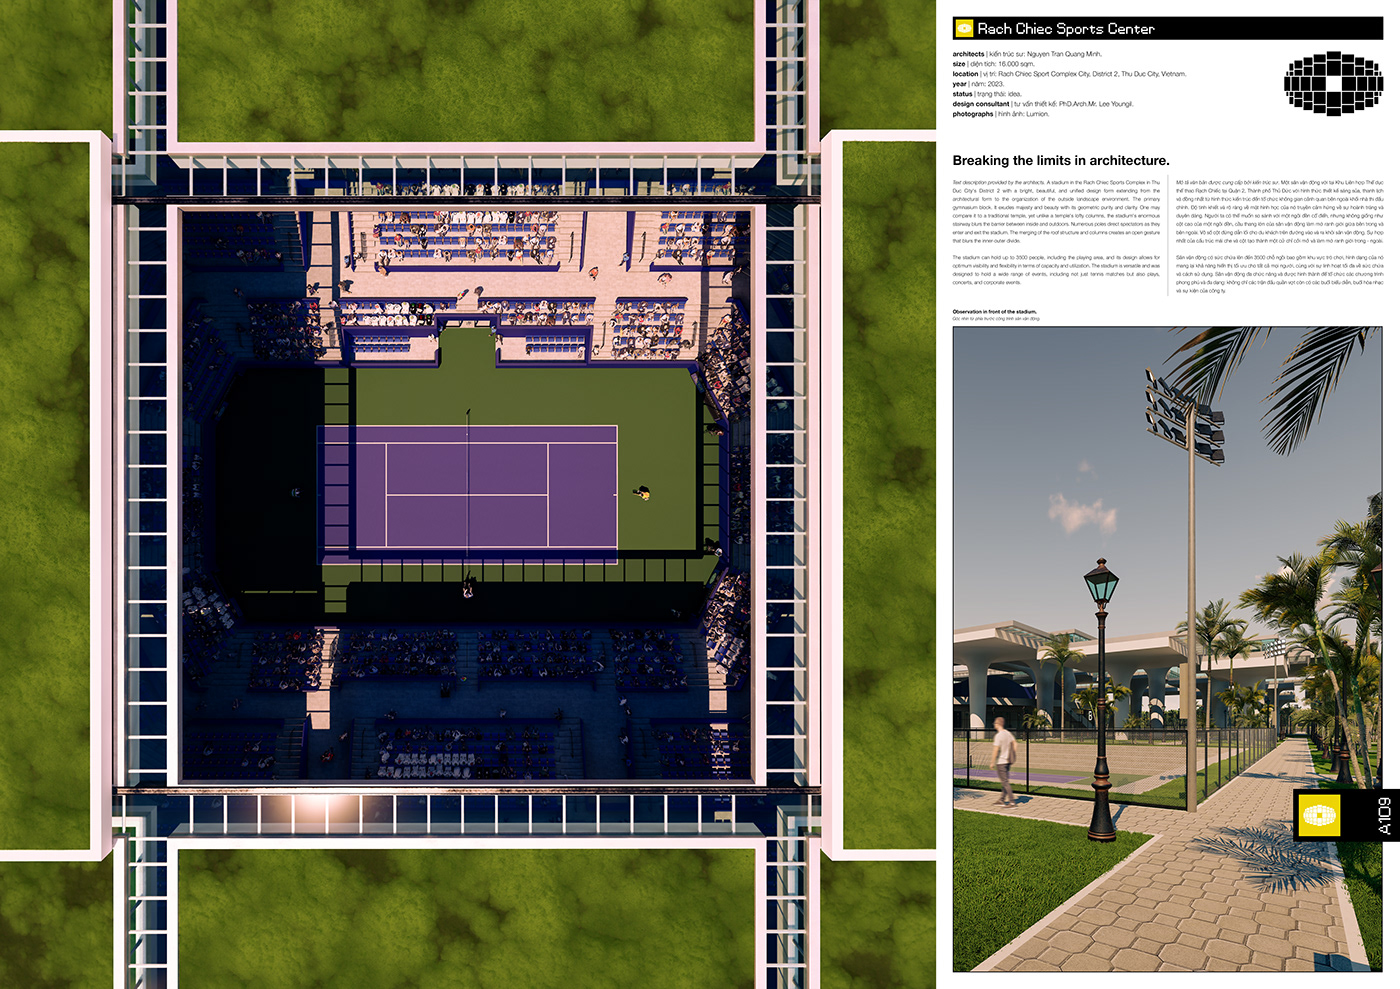 architecture archviz Render sport Sports Design tennis Tennis stadium visualization